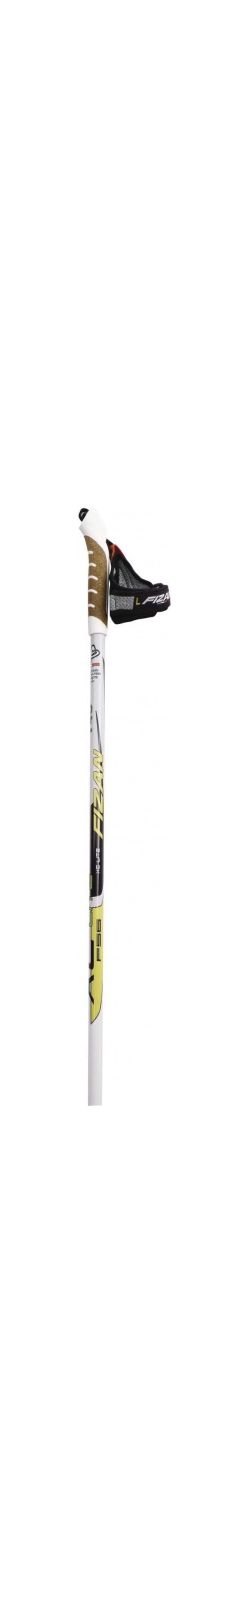 Fizan - Удобные палки лыжные беговые XC Lite